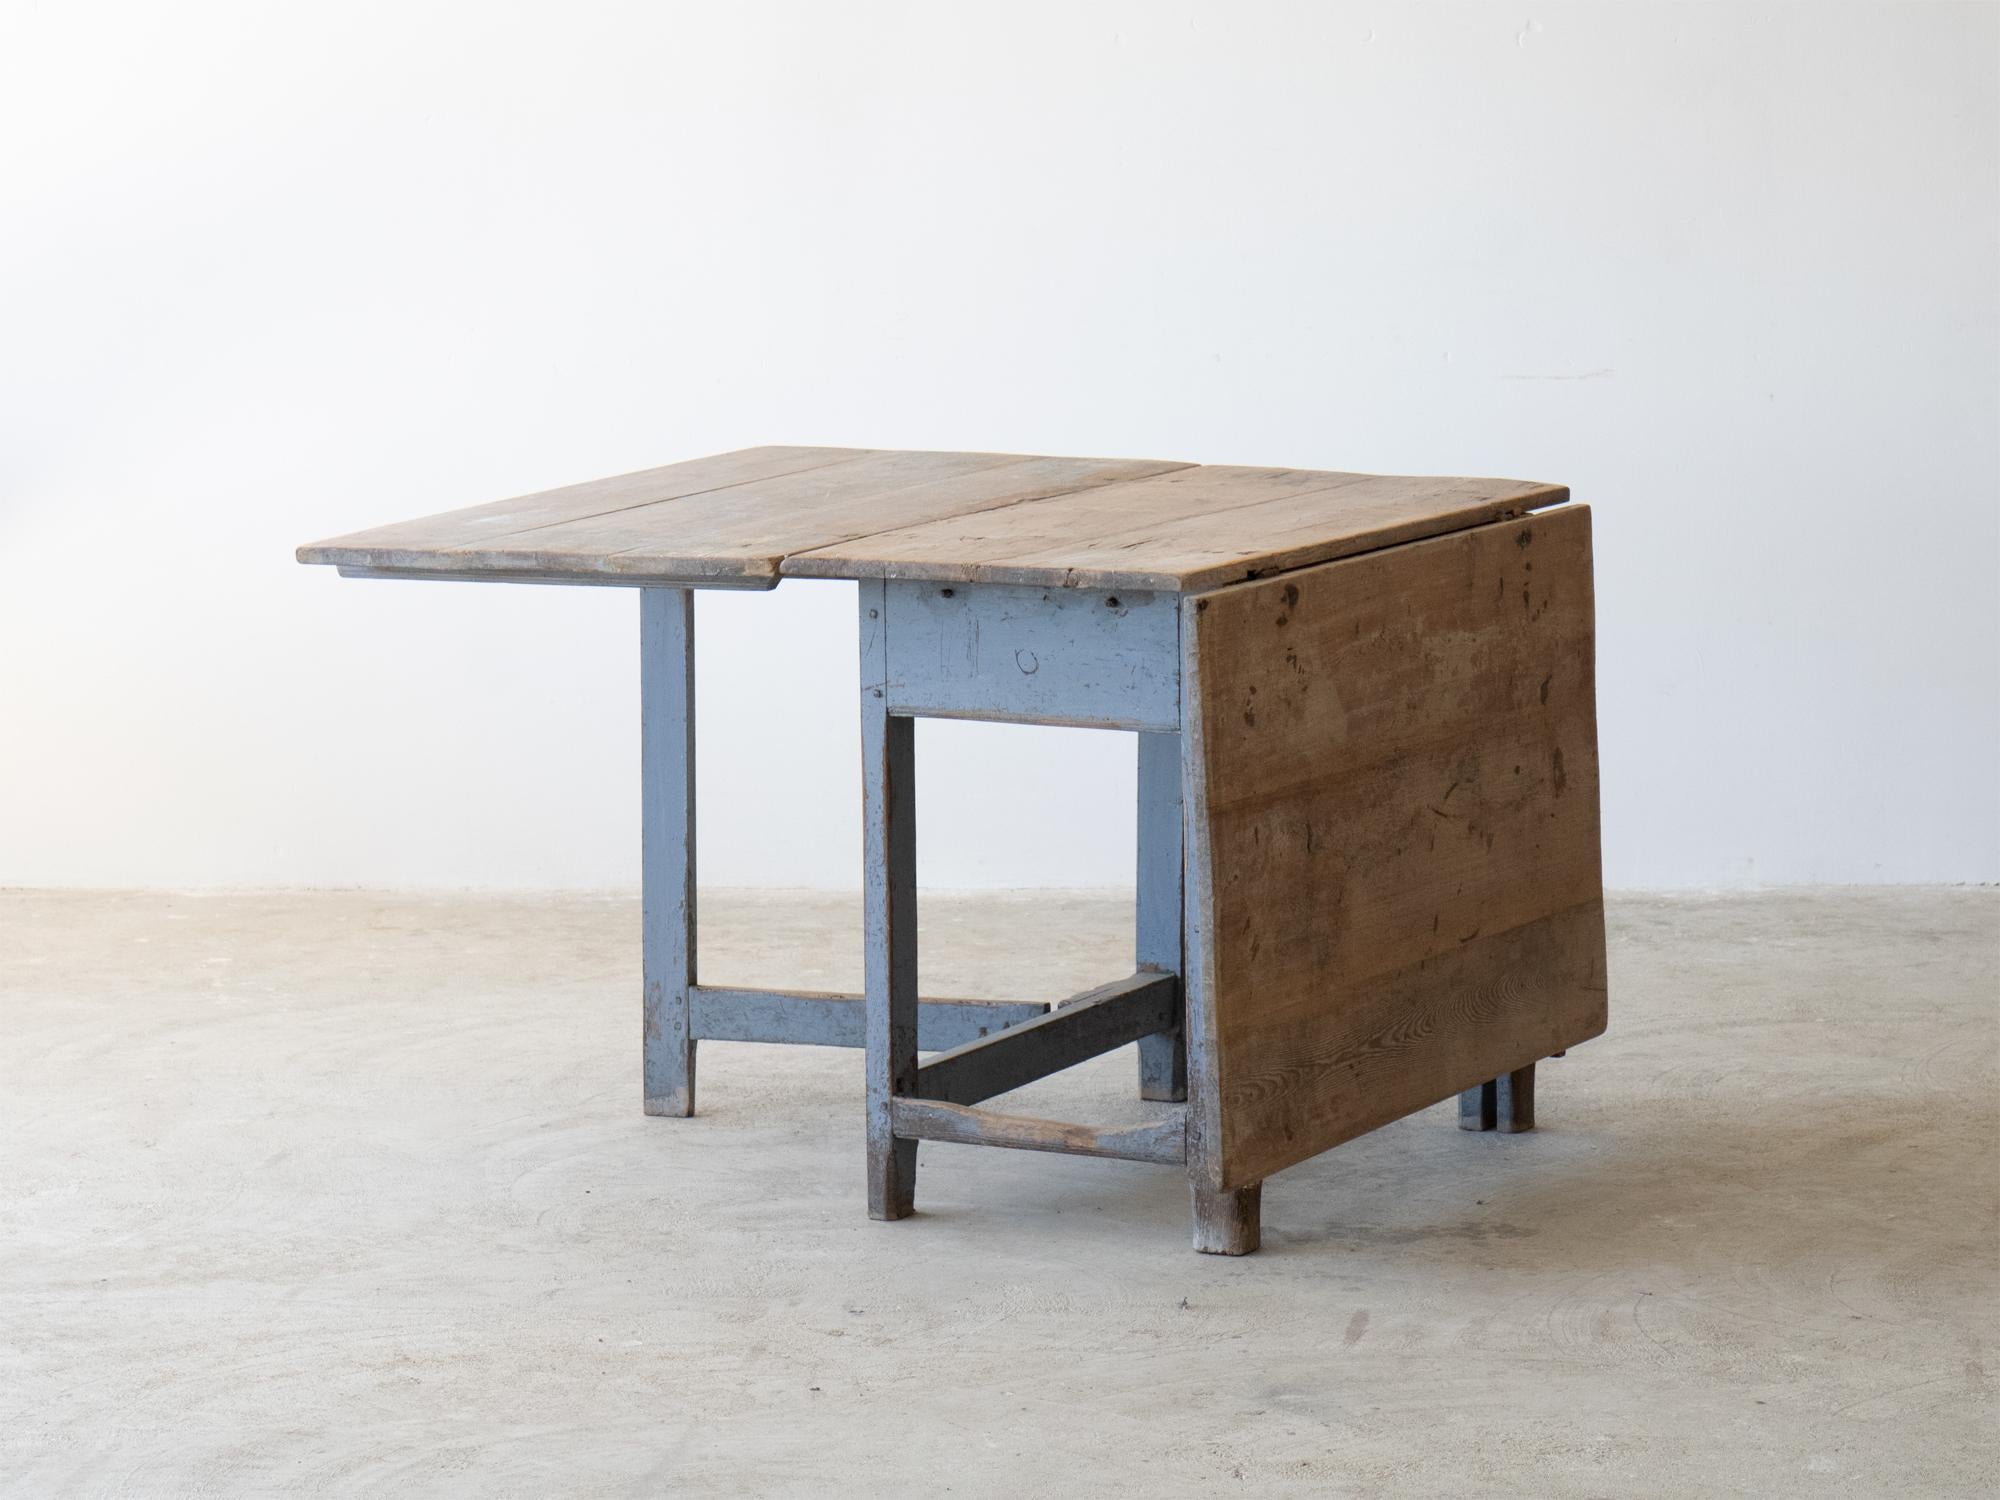 Ein Schlackentisch oder Tortentisch in seiner ursprünglichen perlgrauen Farbe.

Schwedisch, 18. Jahrhundert.

Ein guter Platzsparer mit der Möglichkeit, ihn als Frühstücks- oder Esstisch zu verwenden.

In sehr gutem, hoch-originalem Zustand mit